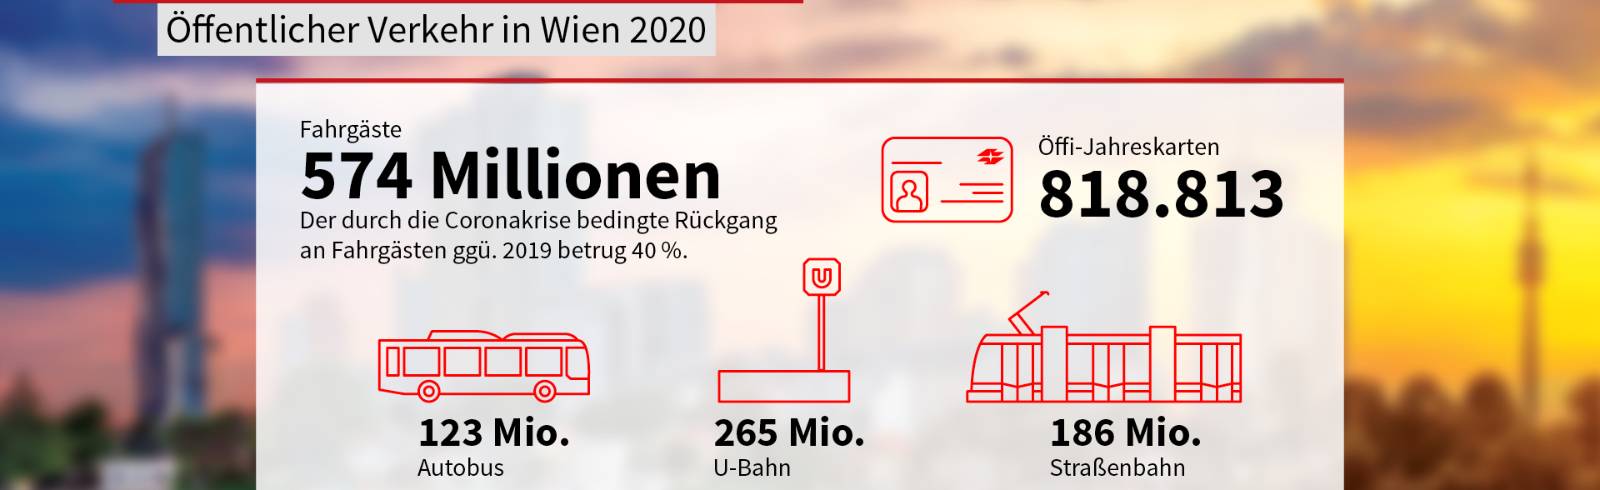 Wien in Zahlen: Öffentlicher Verkehr & Budget